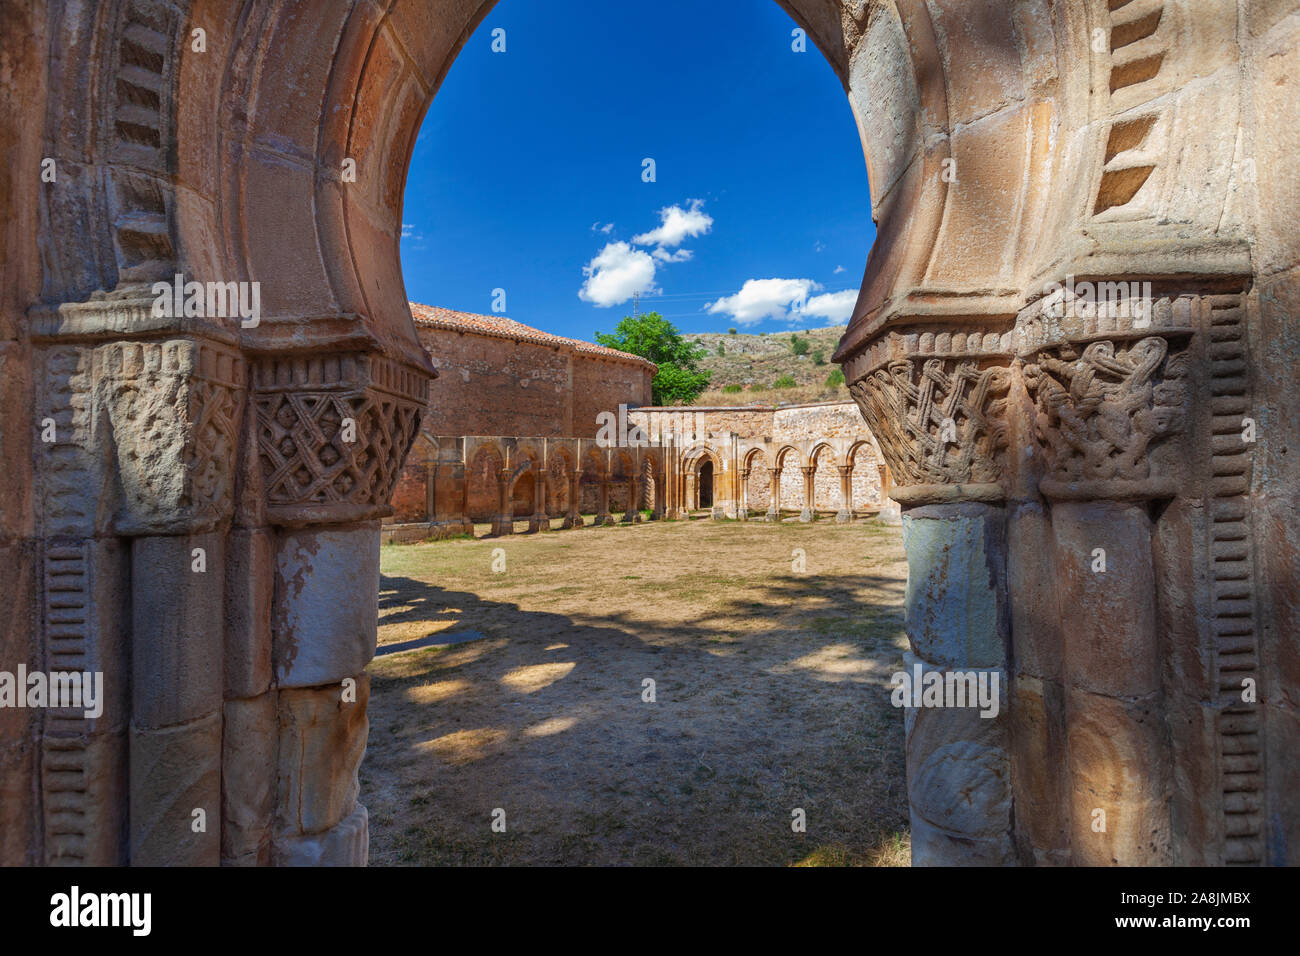 View of San Juan de Duero monastery. Monte de las Animas, Soria. Castilla y Leon, Spain. Stock Photo